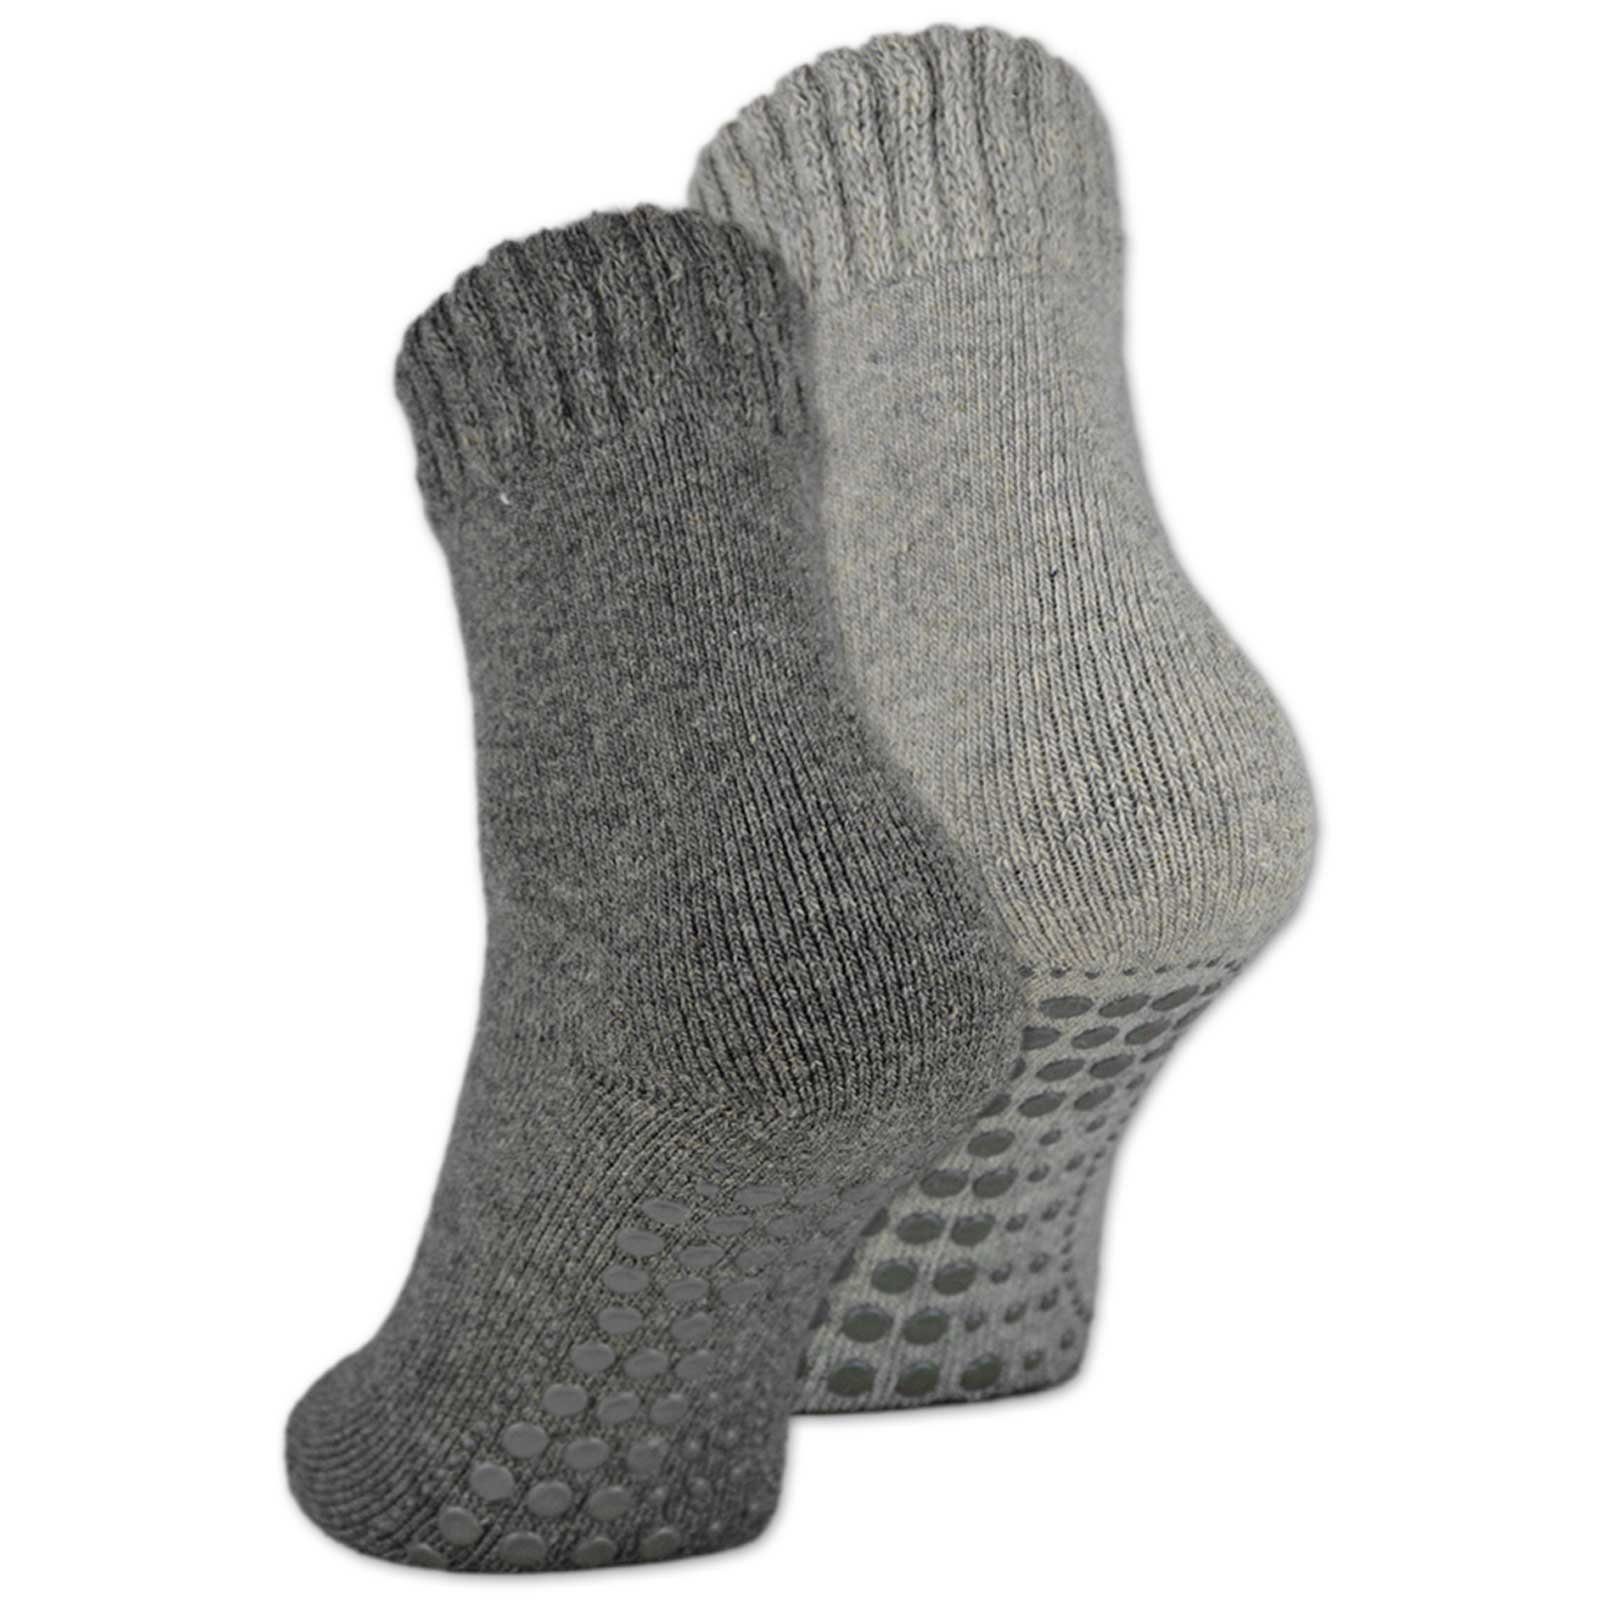 Socken & Paar ABS-Socken mit - oder sockenkauf24 4 Damen ABS 21463 2, Socken 6 Herren WP Anti 2-Paar, Rutsch 39-42) Wolle (Grau/Anthrazit,